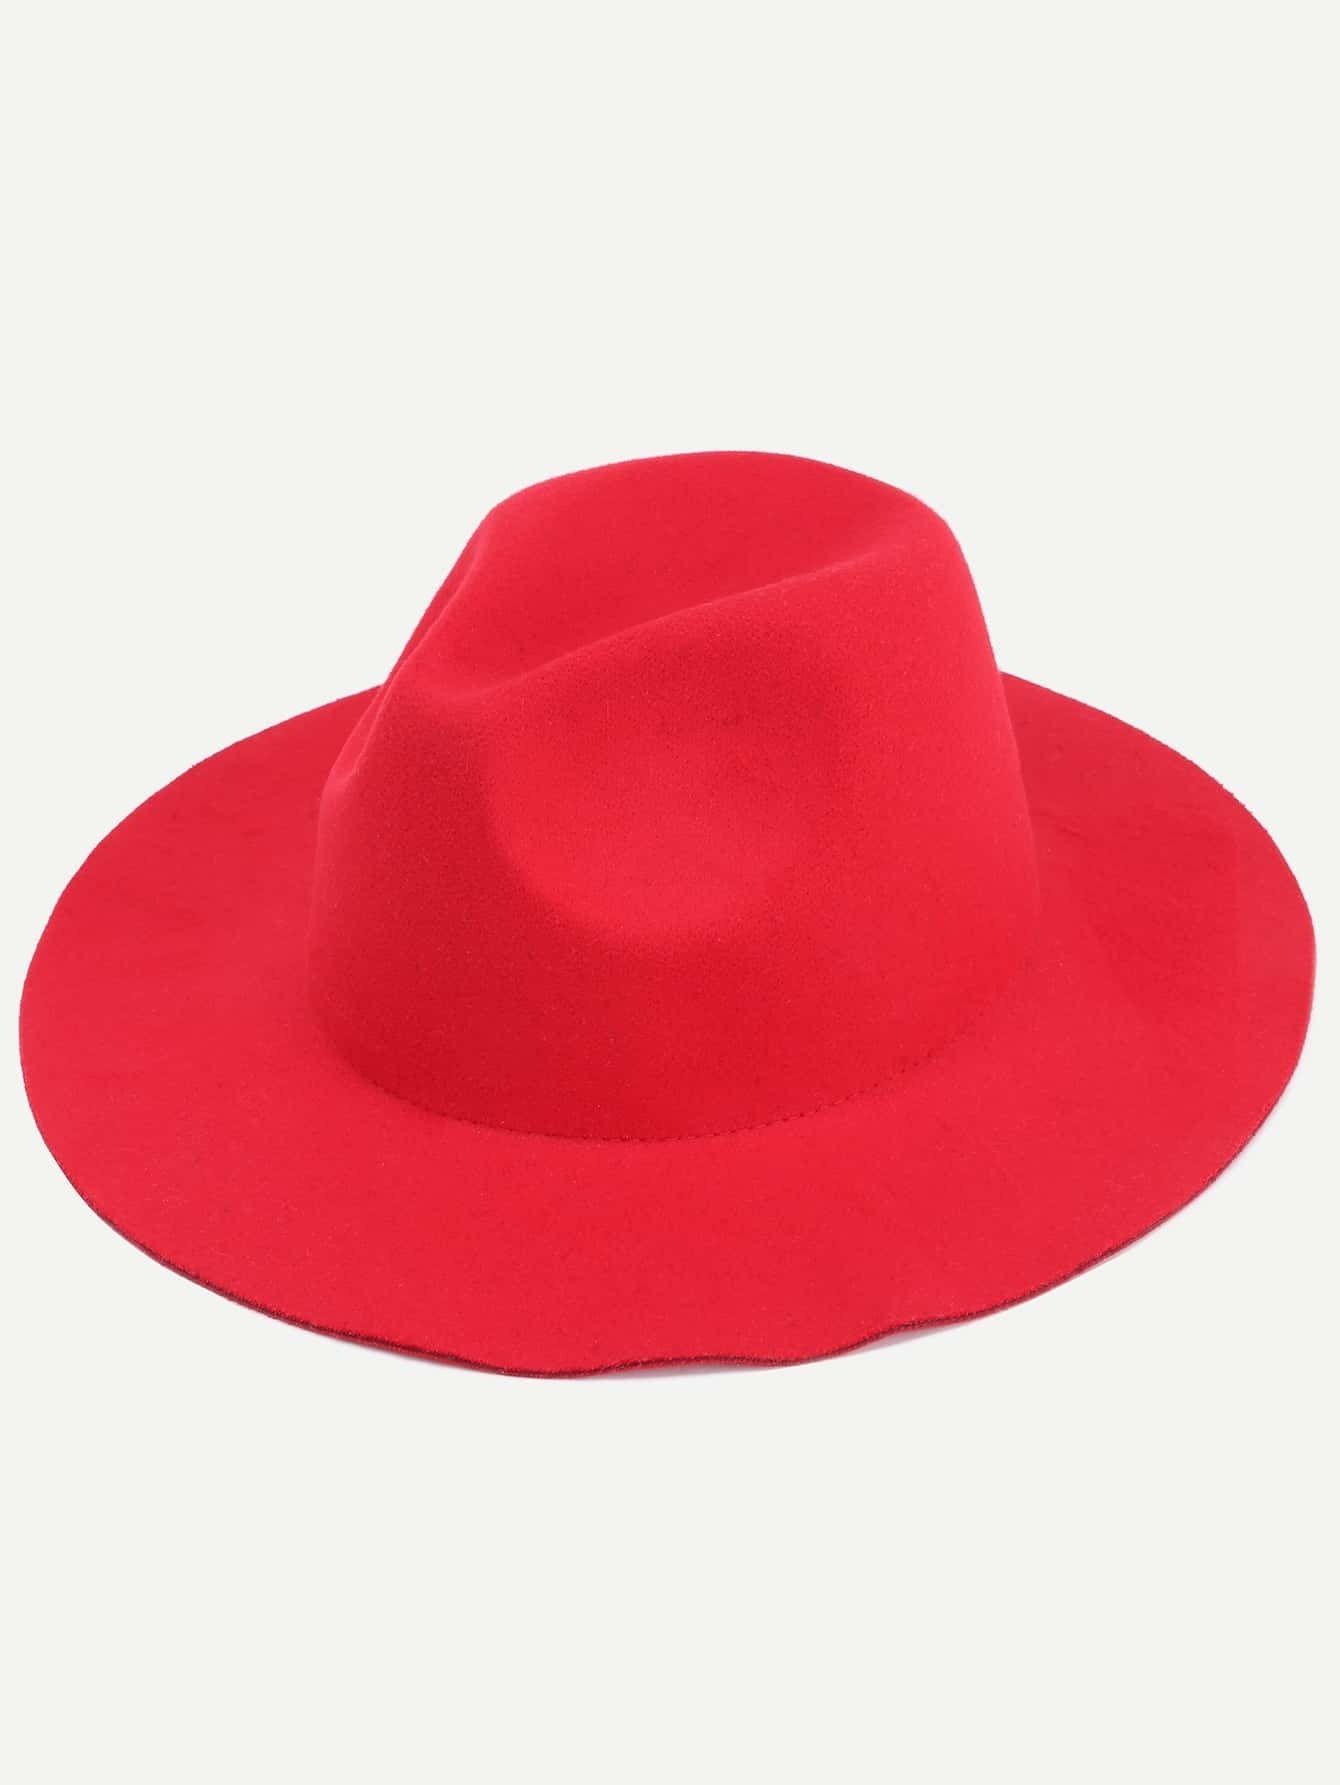 Red Stylish Fedora Hat | Romwe